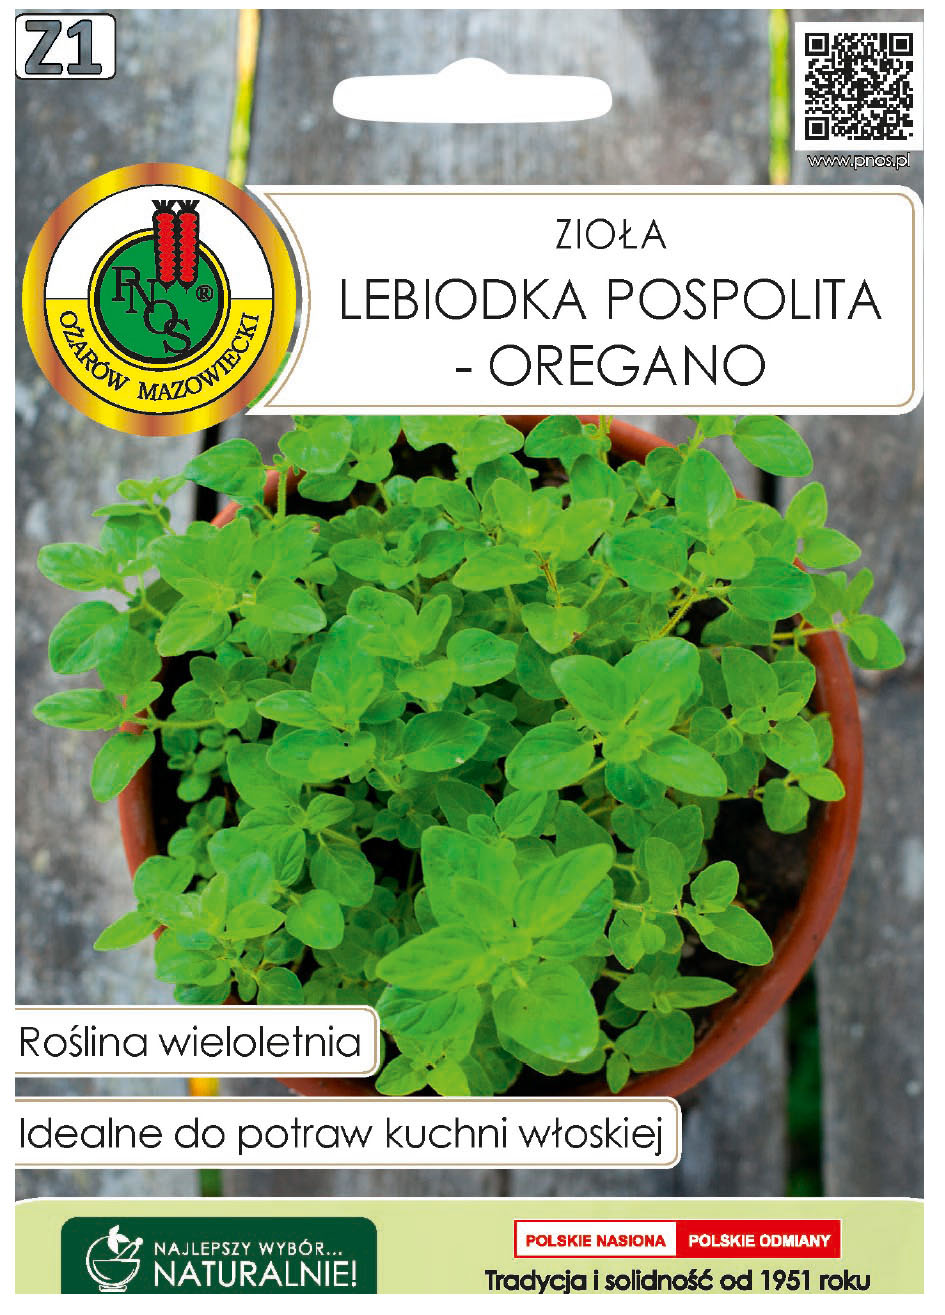 Lebiodka pospolita oregano to roślina wieloletnia, mrozoodporna, o pokładających się pędach.